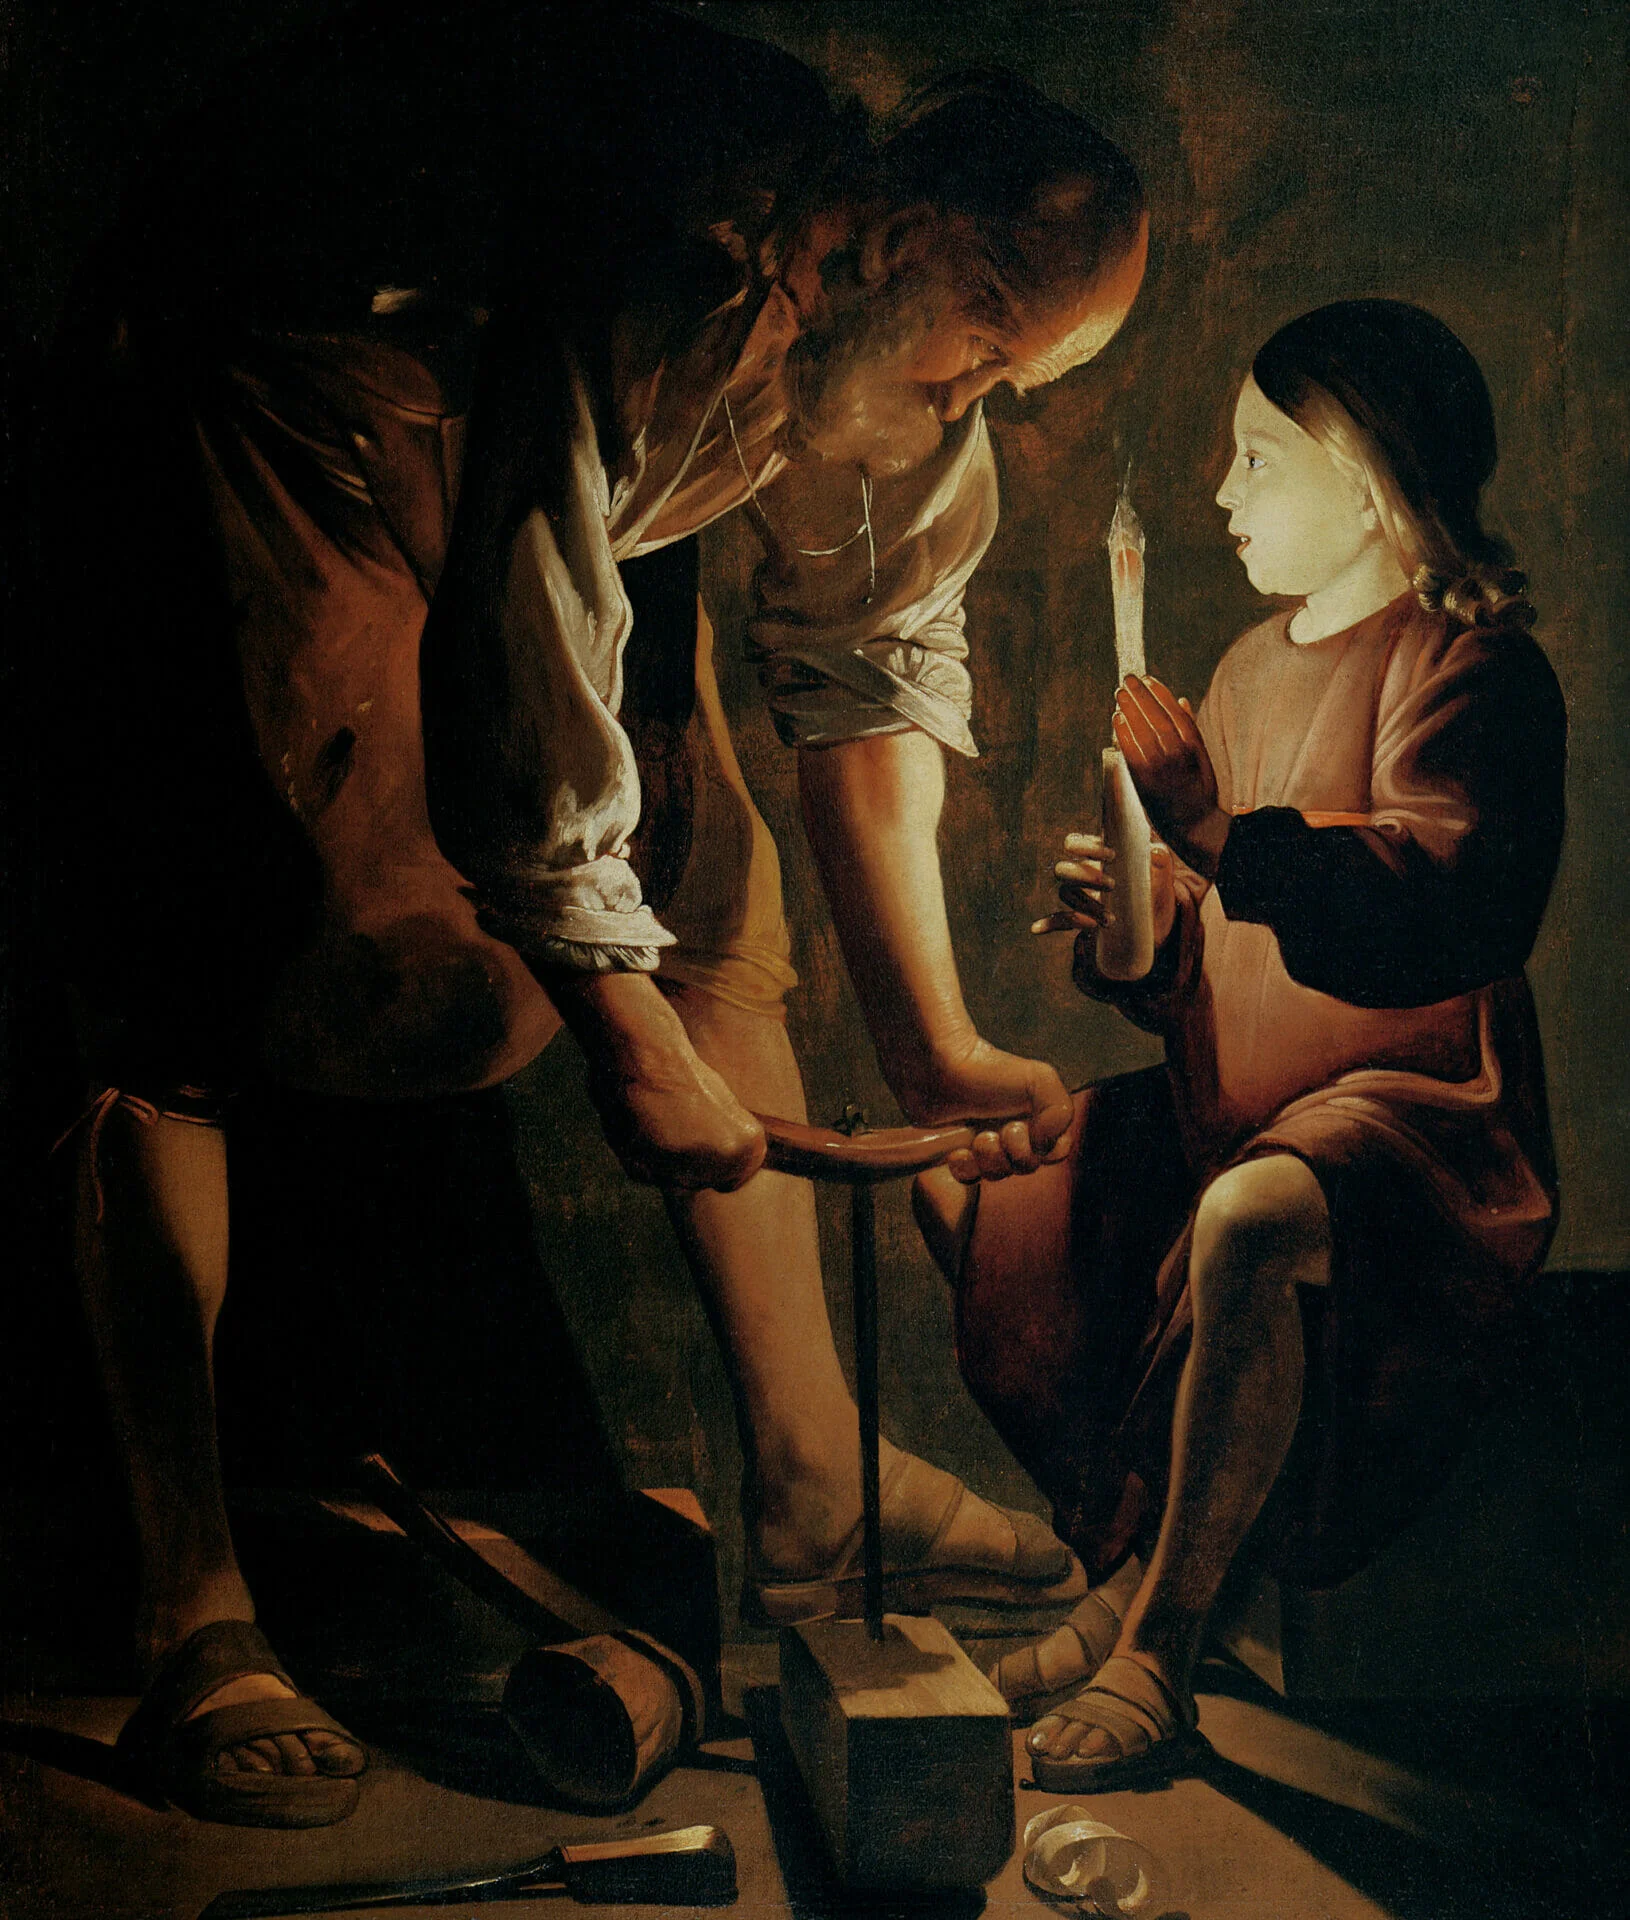 Joseph the Carpenter shows de la Tour's mise-en-scene